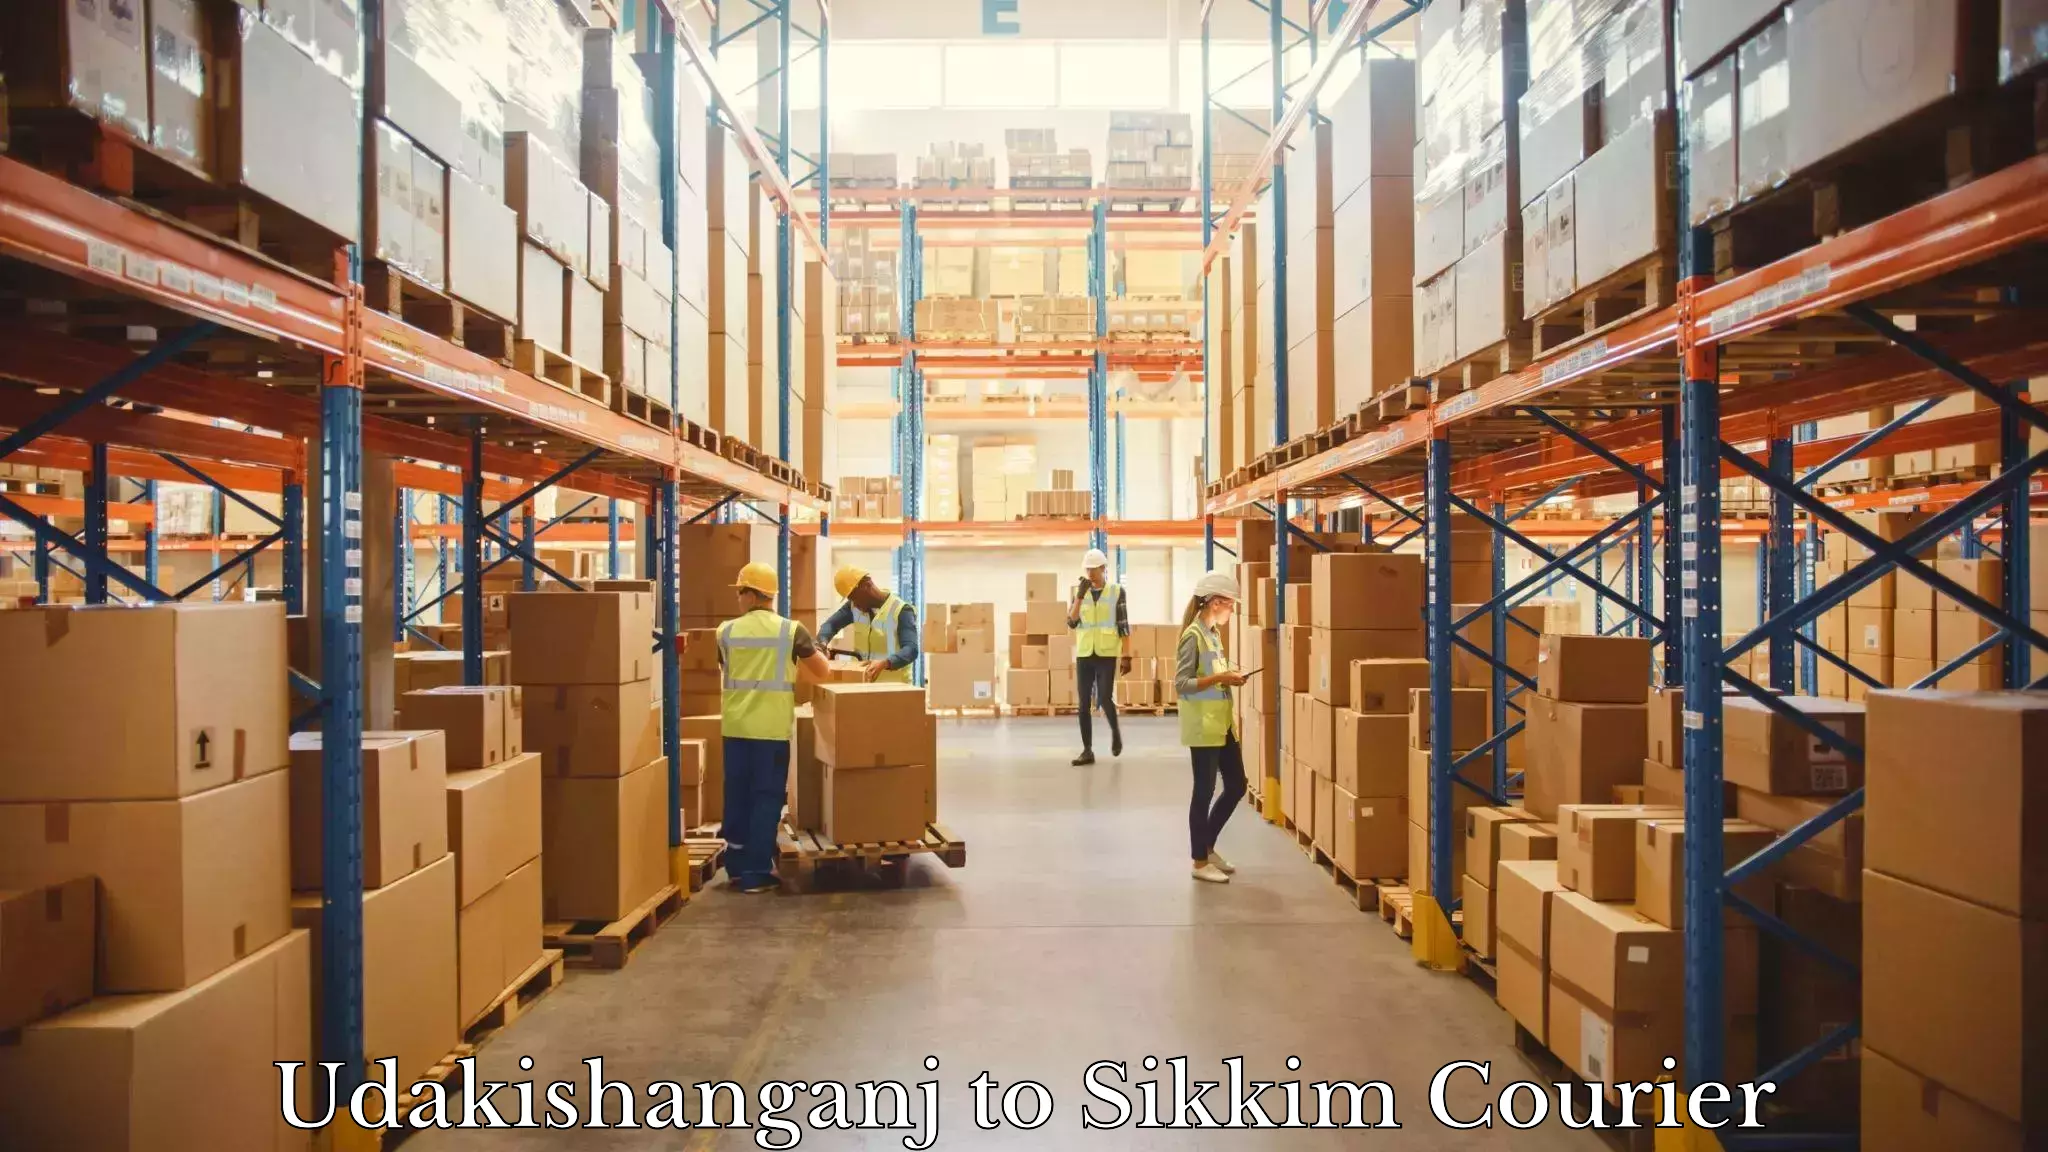 Expedited shipping methods Udakishanganj to East Sikkim